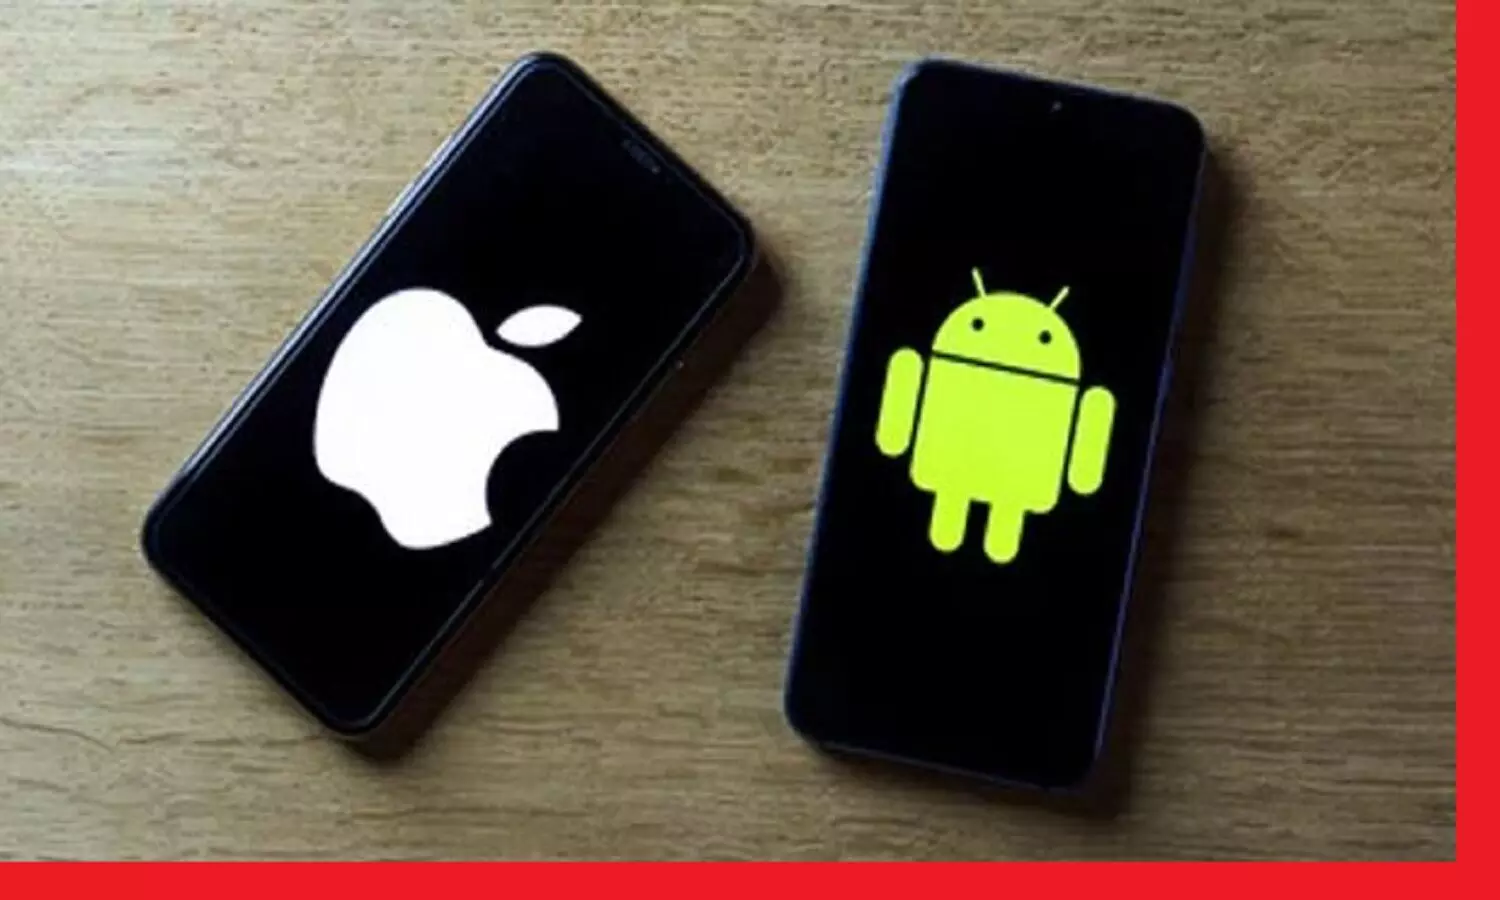 How to transfer android mobile data to apple: एंड्राइड मोबाइल का डाटा एप्पल में कैसे ट्रांसफर करें